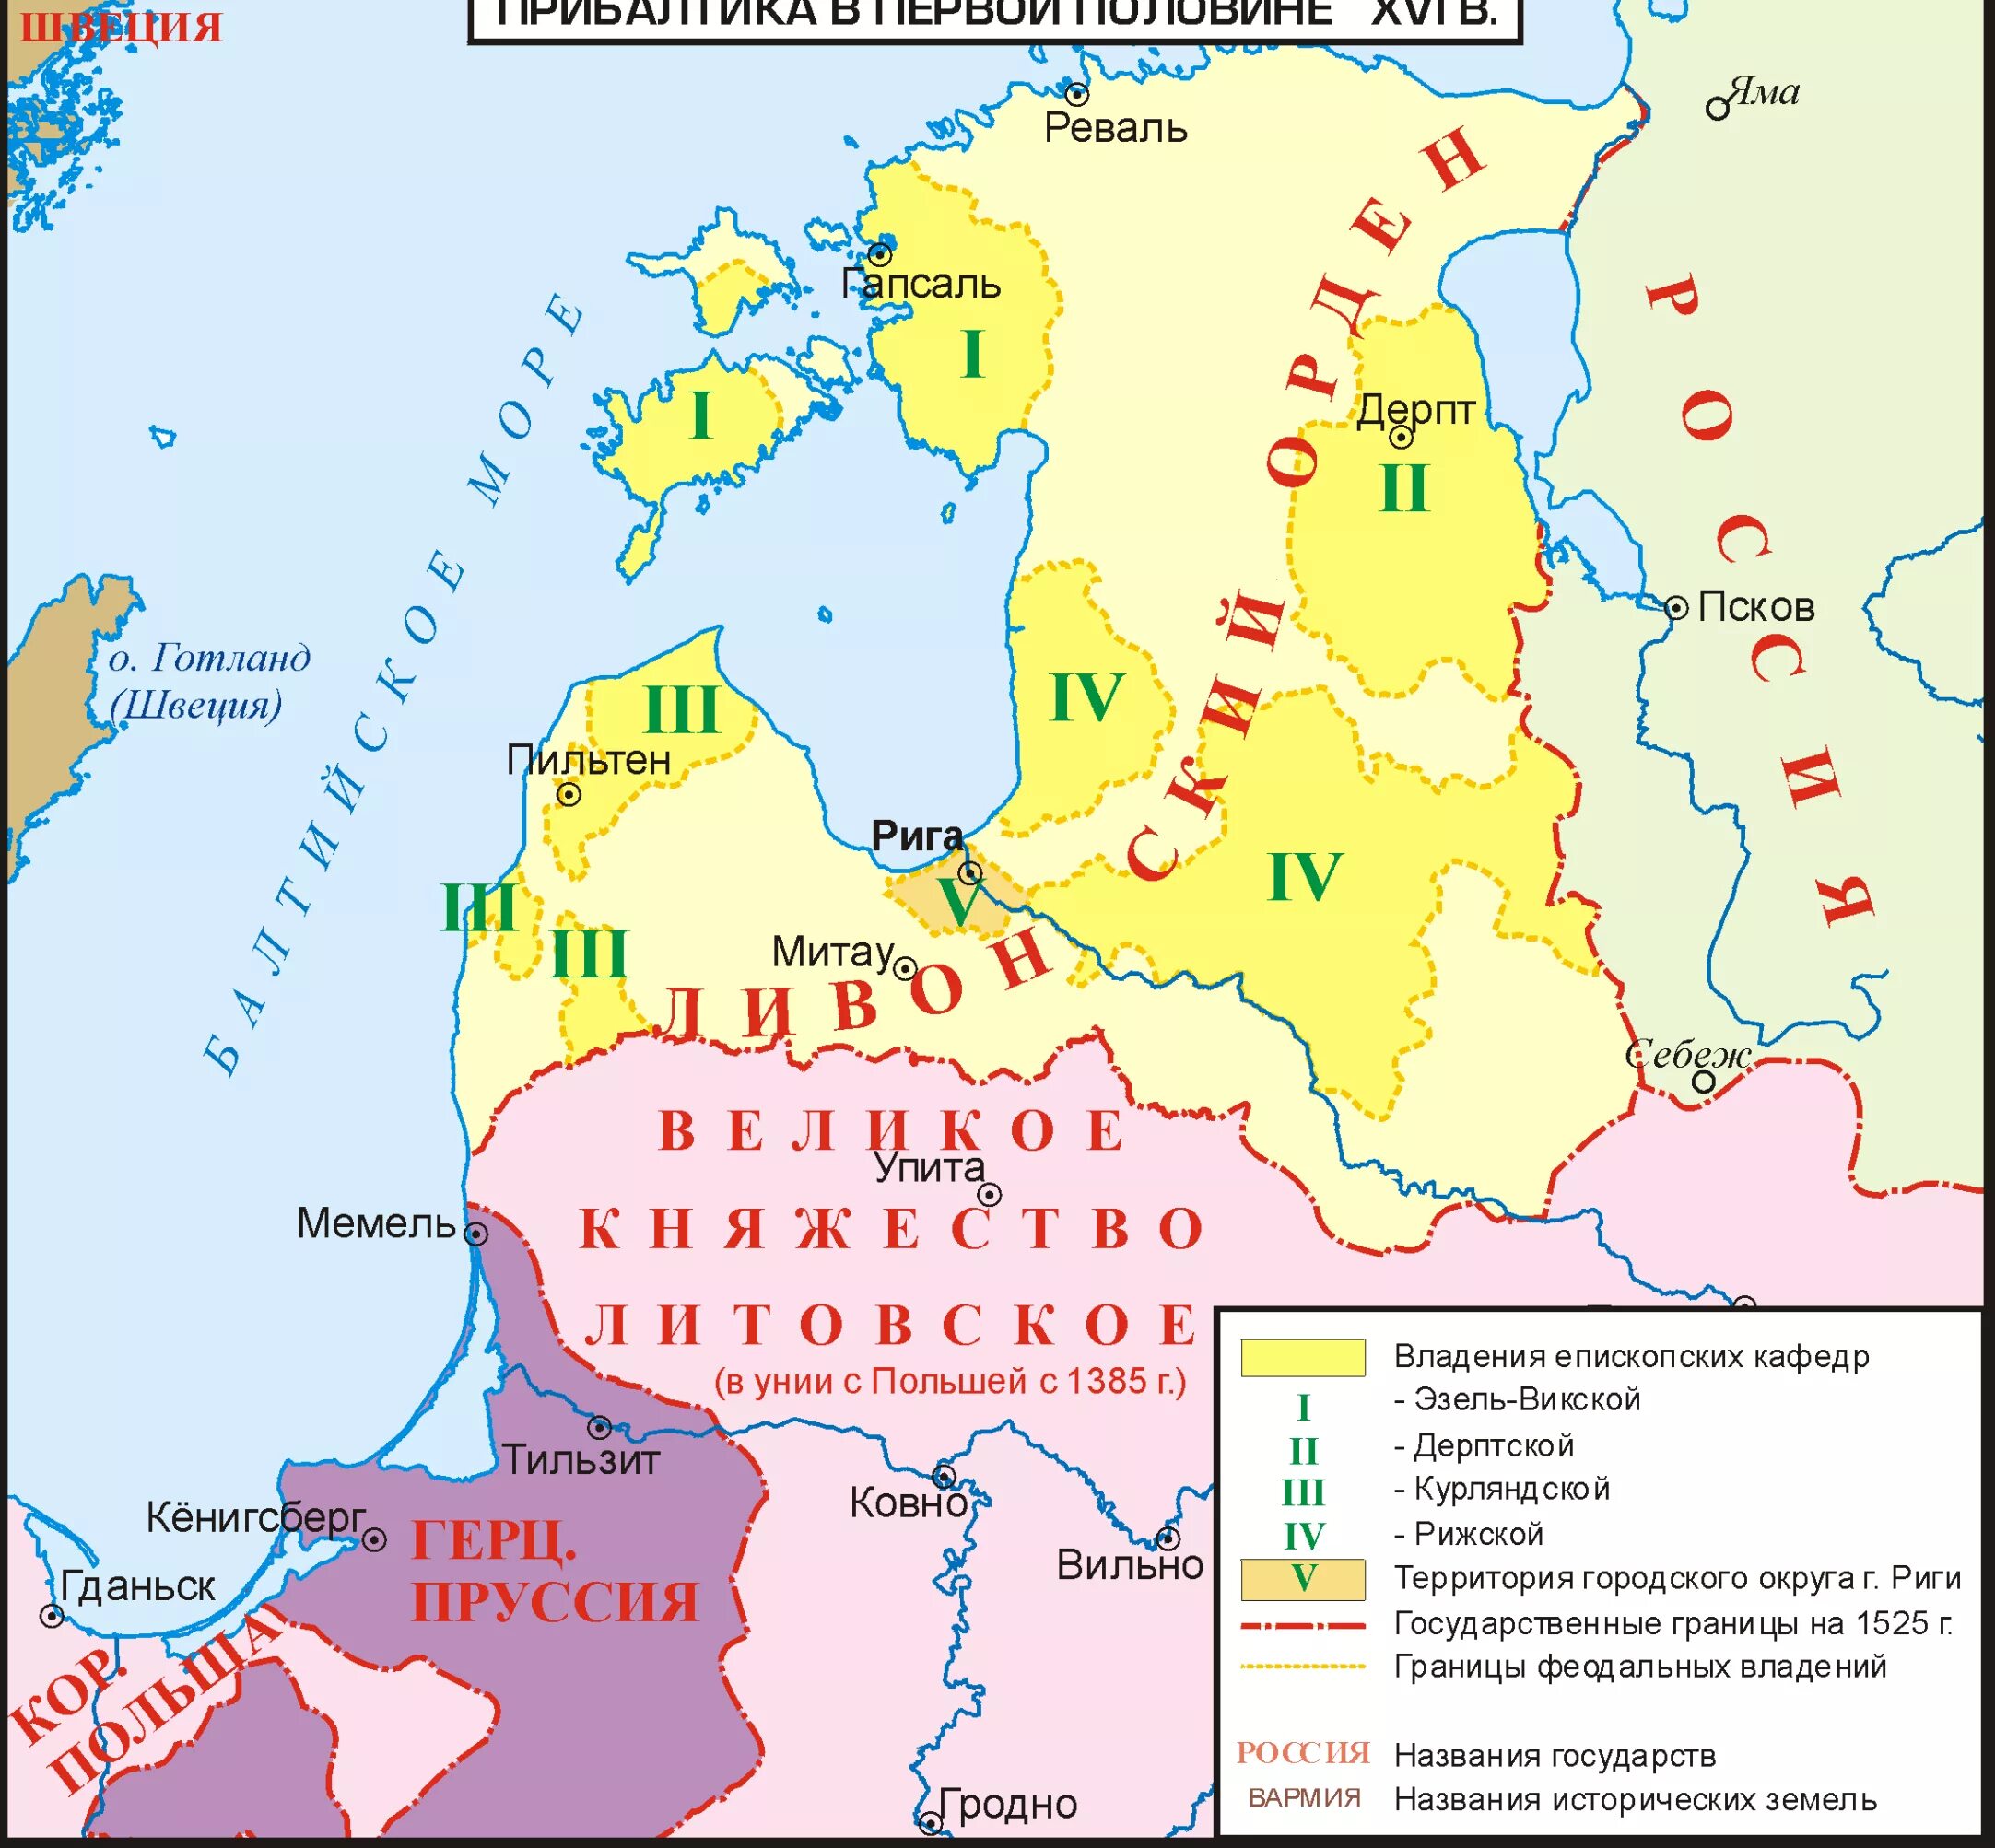 Земли Ливонского ордена в 16 веке. Ливонский орден карта 13 век. Ливонский орден на карте в 16 веке. Границы Ливонского ордена в 13 веке.